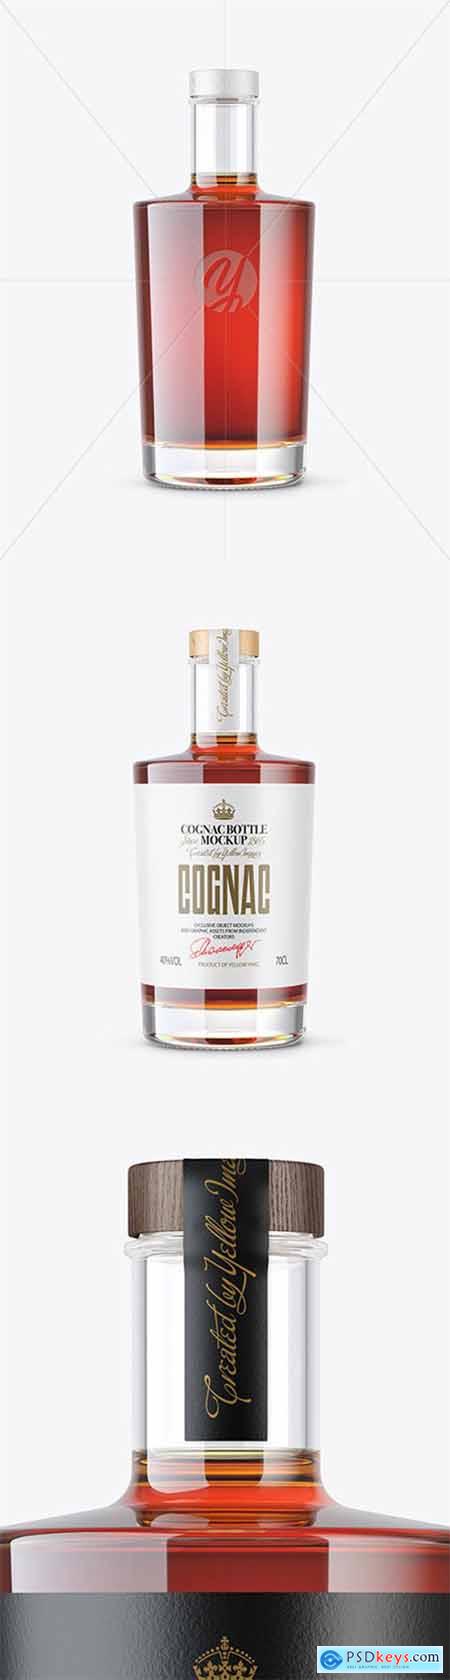 Clear Glass Cognac Bottle Mockup 80606